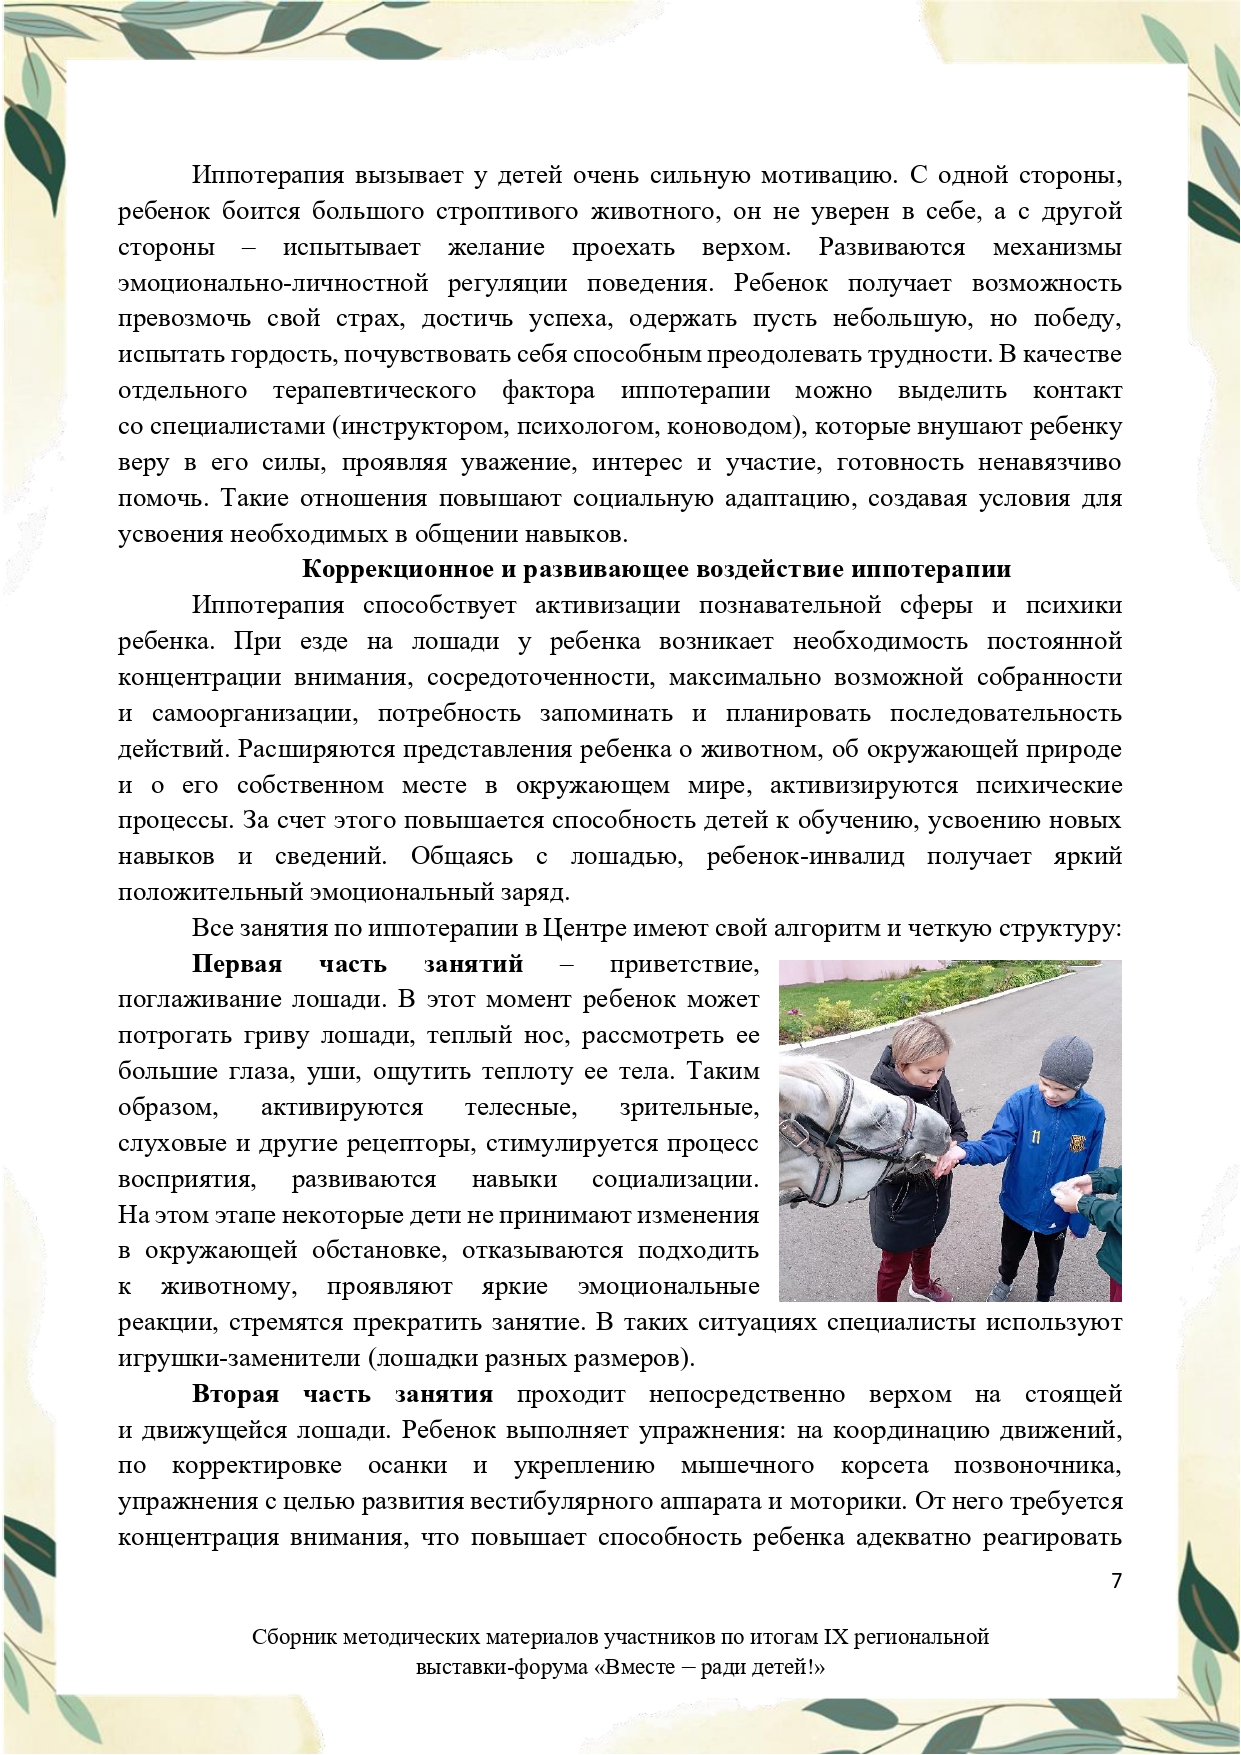 Sbornik_metodicheskikh_materialov_uchastnikov_IX_regionalnoy_vystavki-foruma_Vmeste__radi_detey_33__2023_page-0007